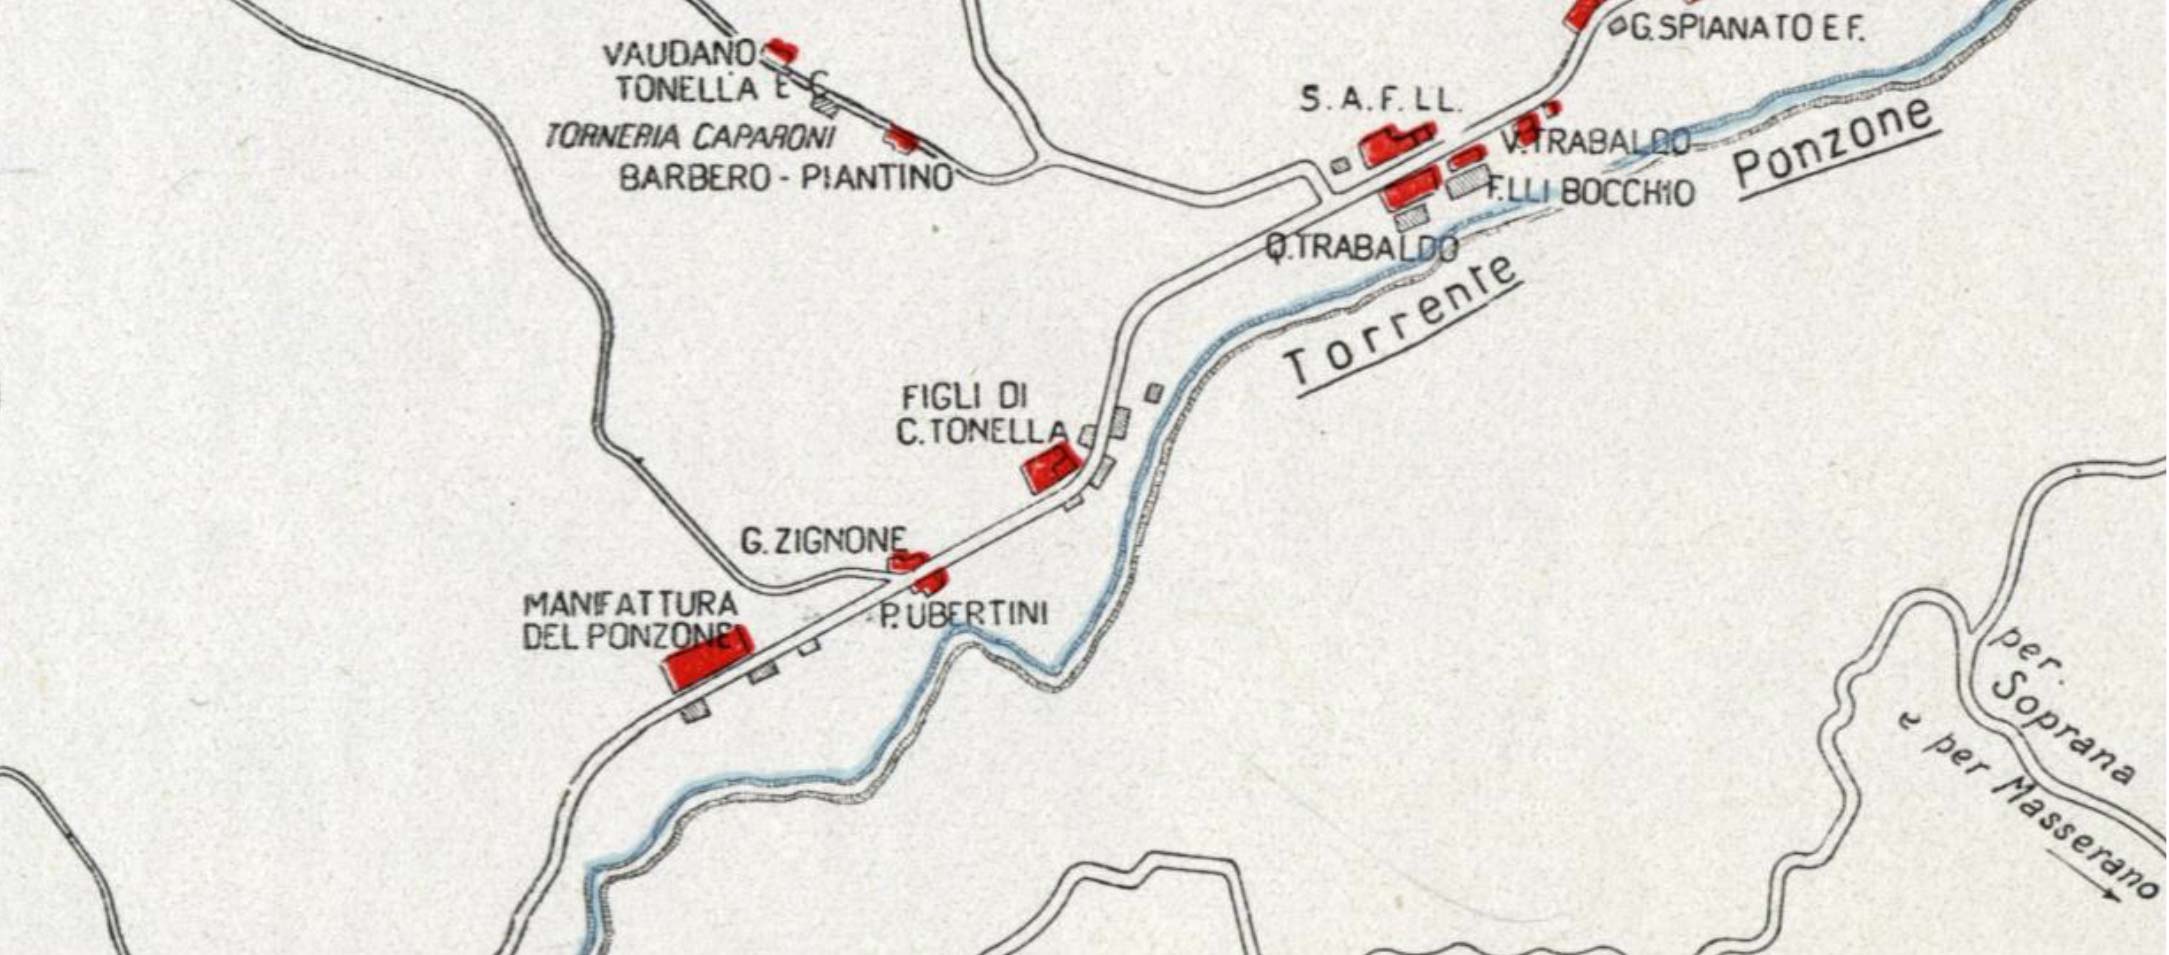 摘自1934年《毛纺厂公司年志》地图照片，Ponzone溪谷附近的工厂